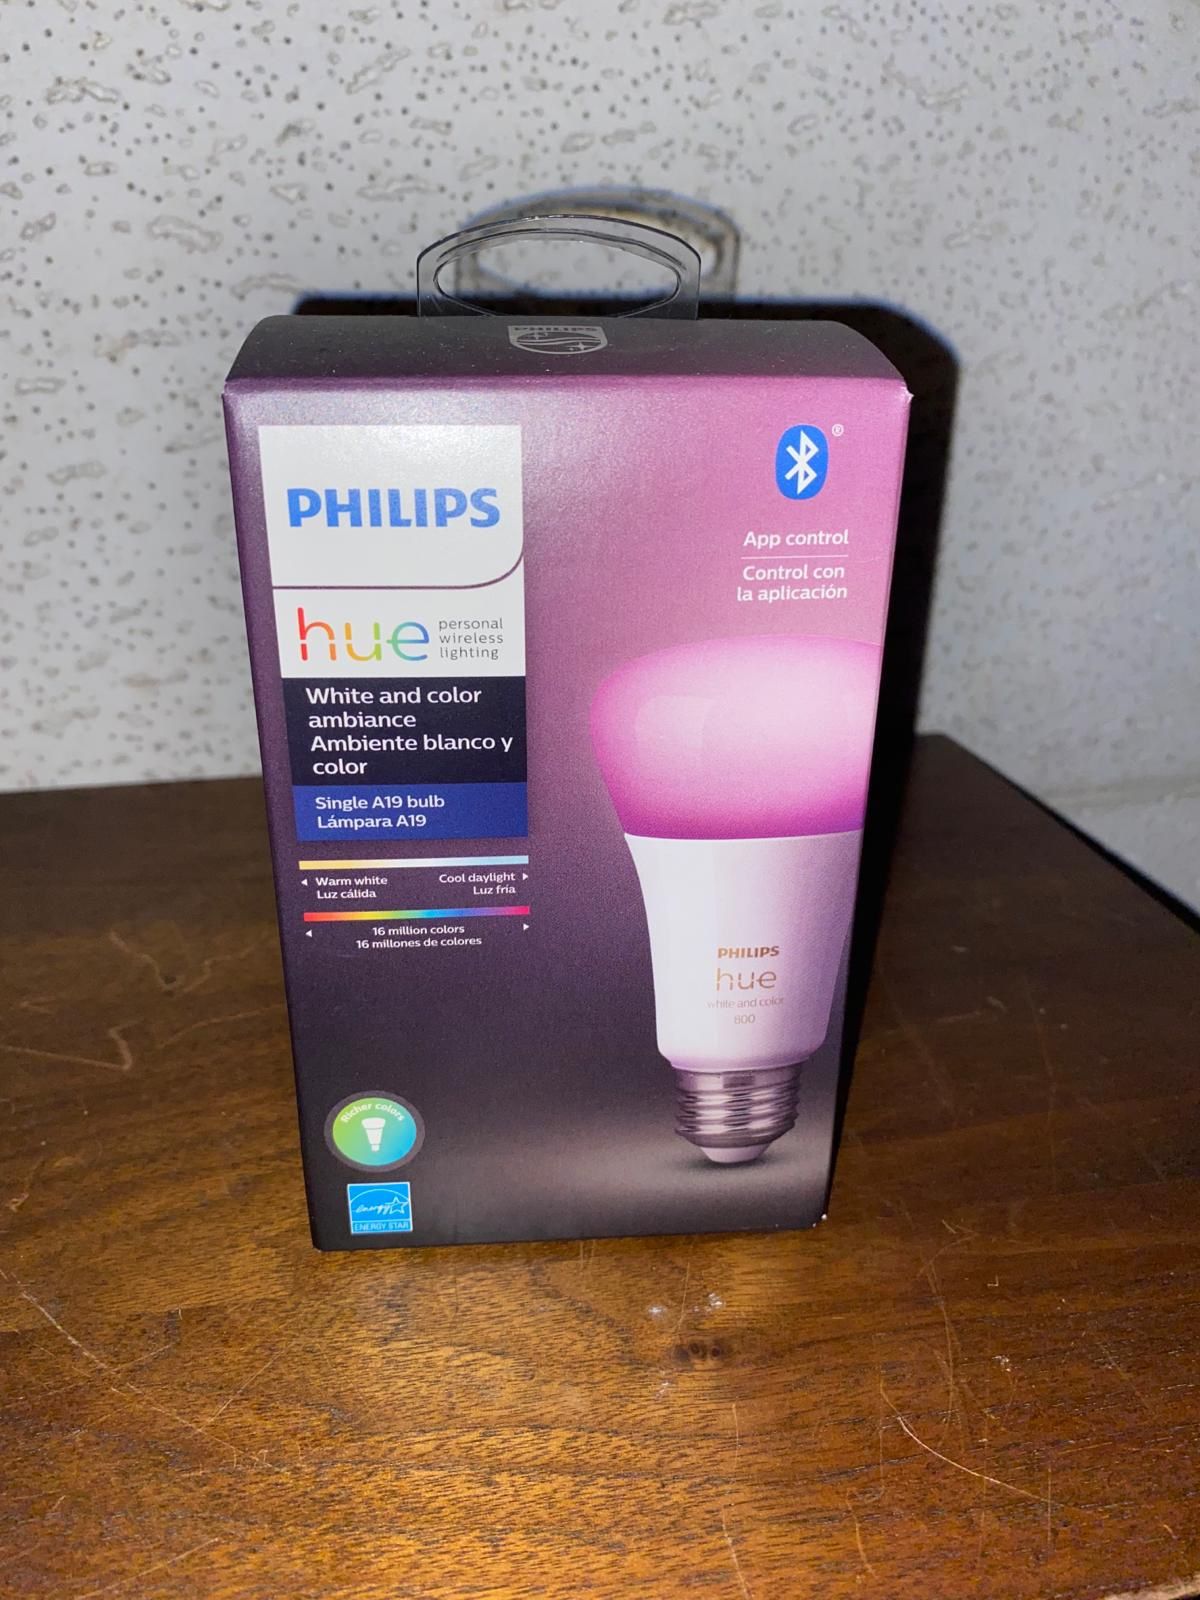 Phillips Hue LED Lights